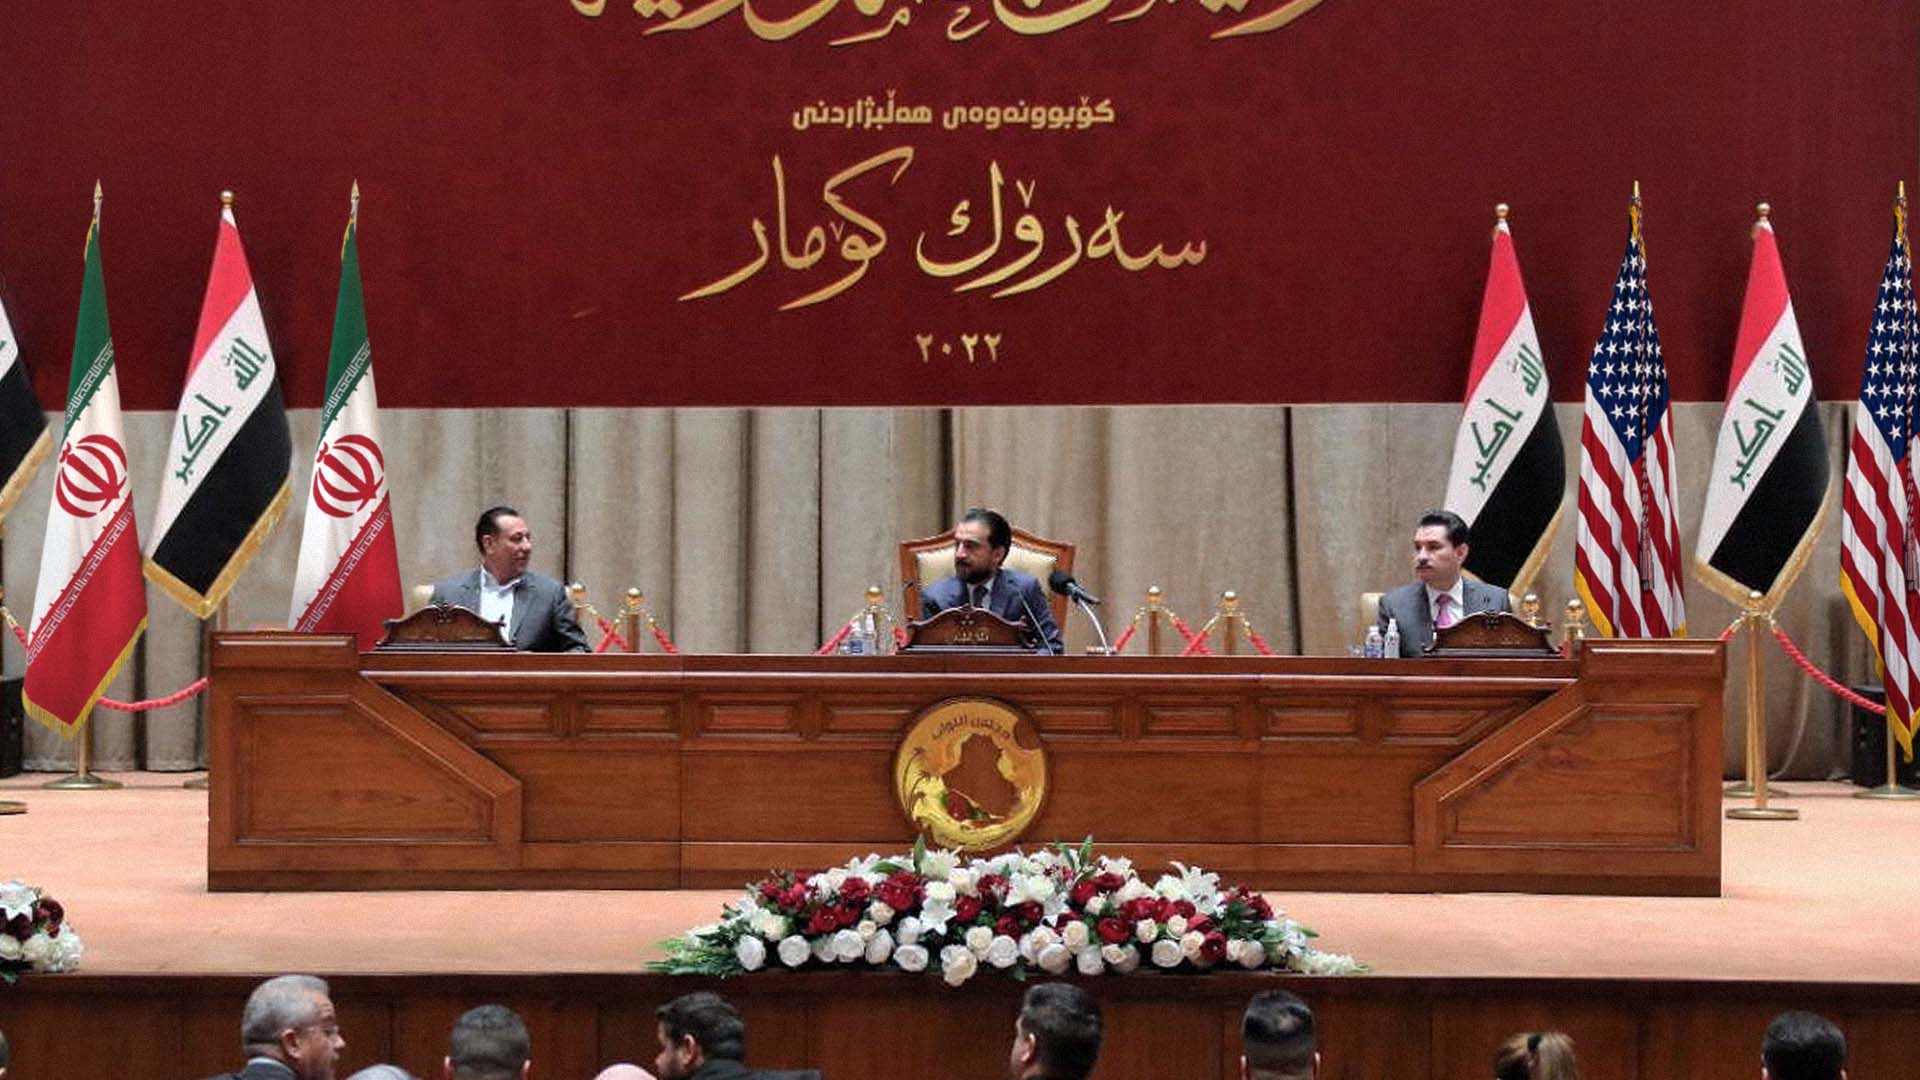 صورة  تأخر انتخاب رئيس العراق الحر المستقل بعد اعتراض التبعية الإيرانية على مرشح التبعية الغربية